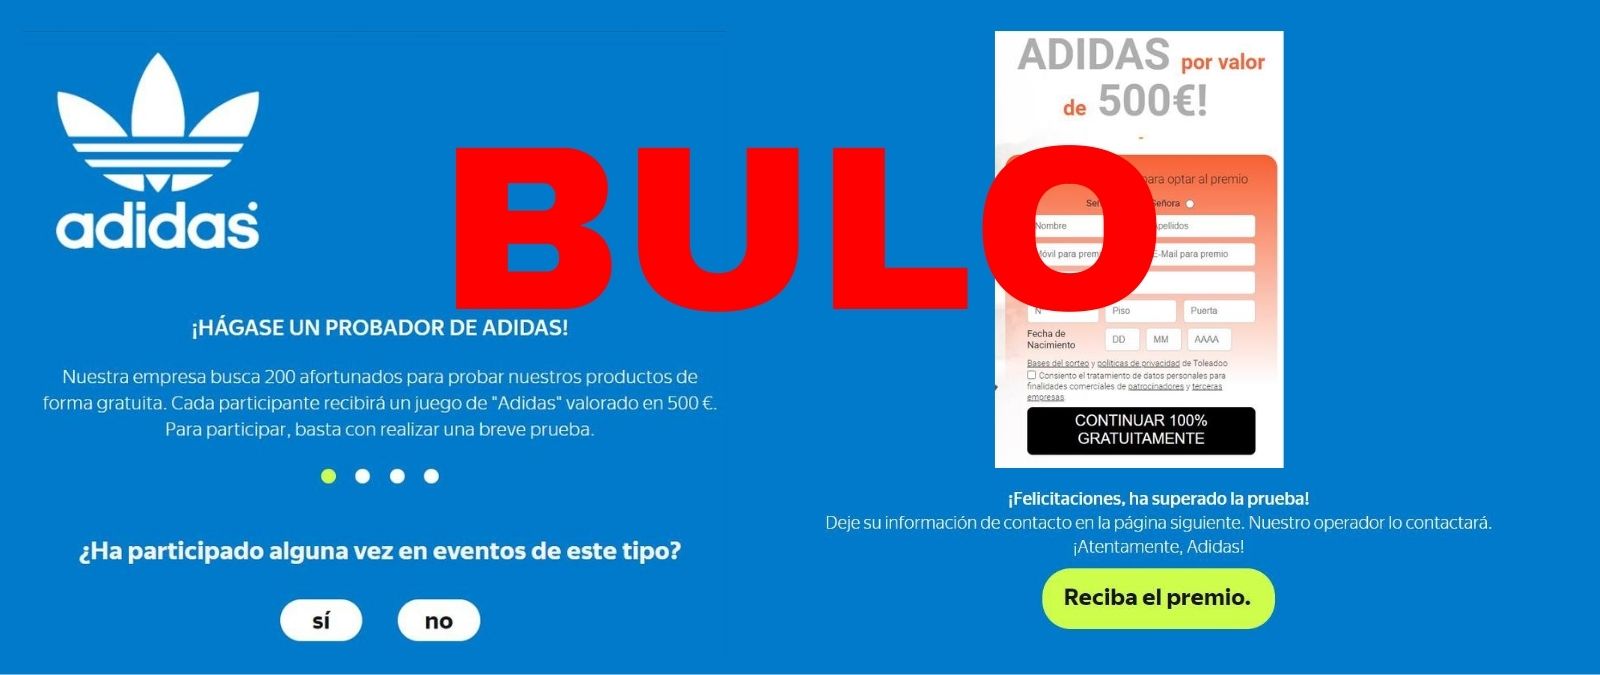 No, Adidas no está buscando 200 personas para probar productos por valor 500€ de manera es 'phishing' · Maldita.es - para que no te cuelen